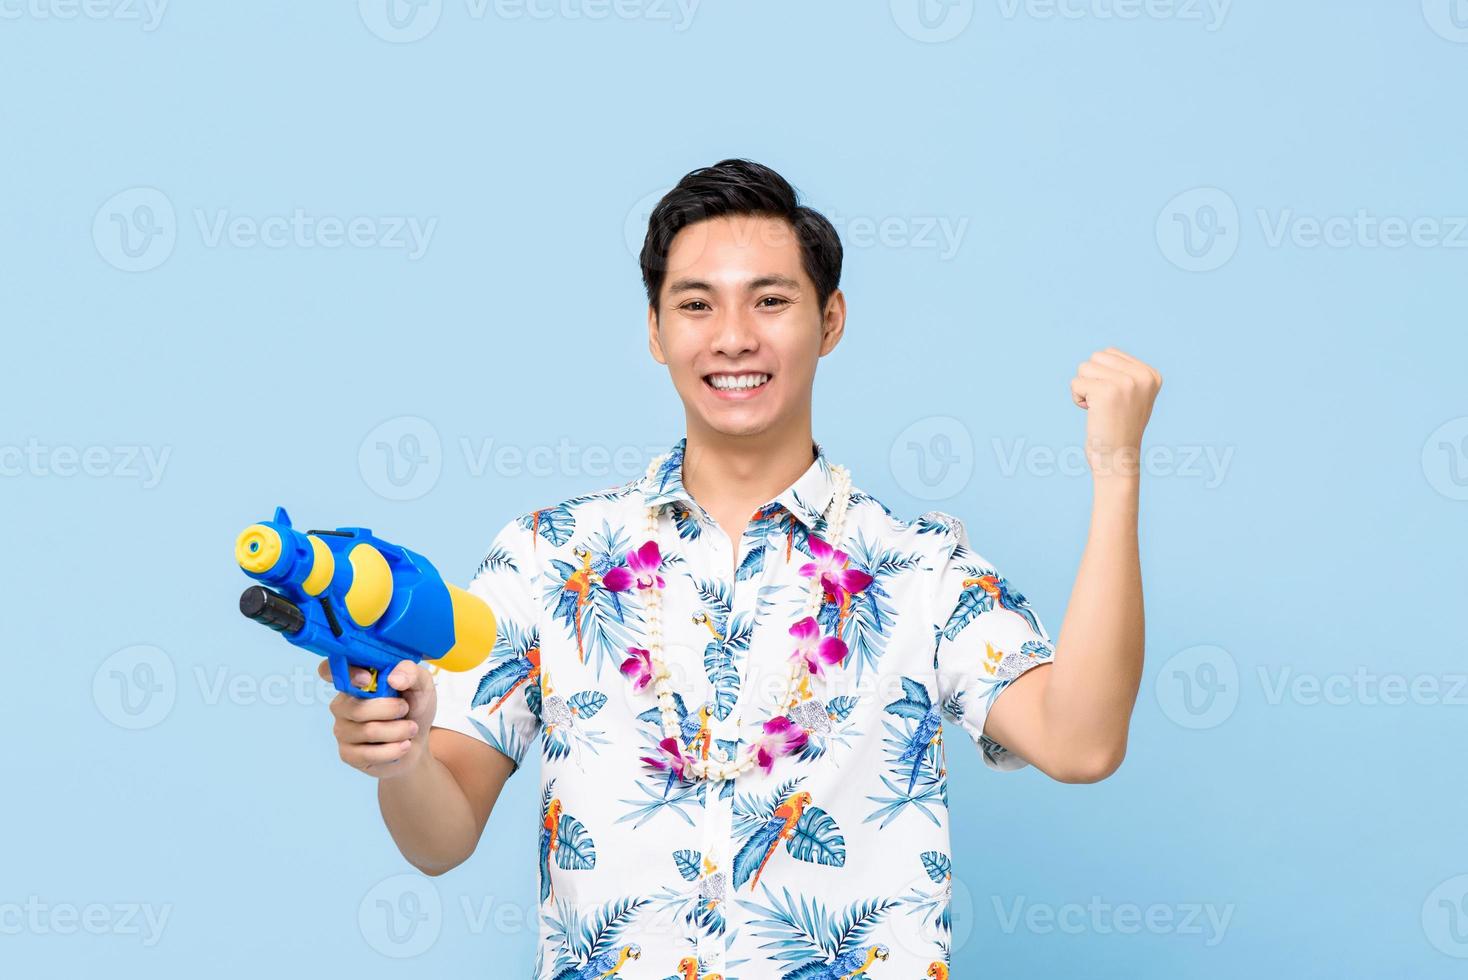 leende stilig asiatisk man som leker med vattenpistol och höjer näven isolerad på studioblå bakgrund för songkran-festivalen i Thailand och Sydostasien foto